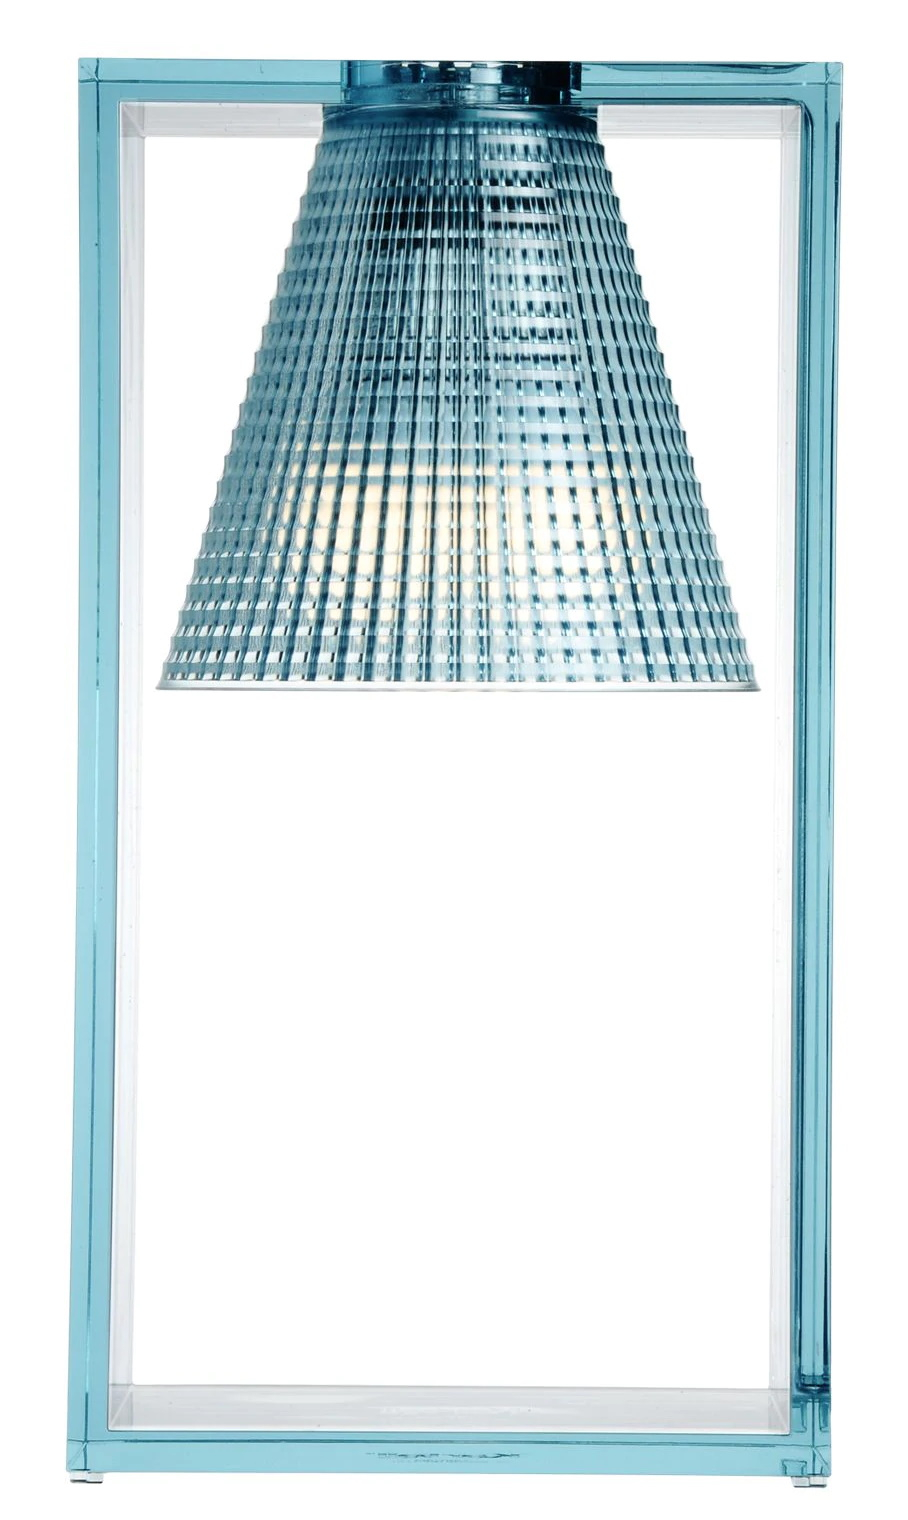 Veioza Kartell Light Air design Eugeni Quitllet 32x17x14cm bleu transparent Kartell imagine reduss.ro 2022